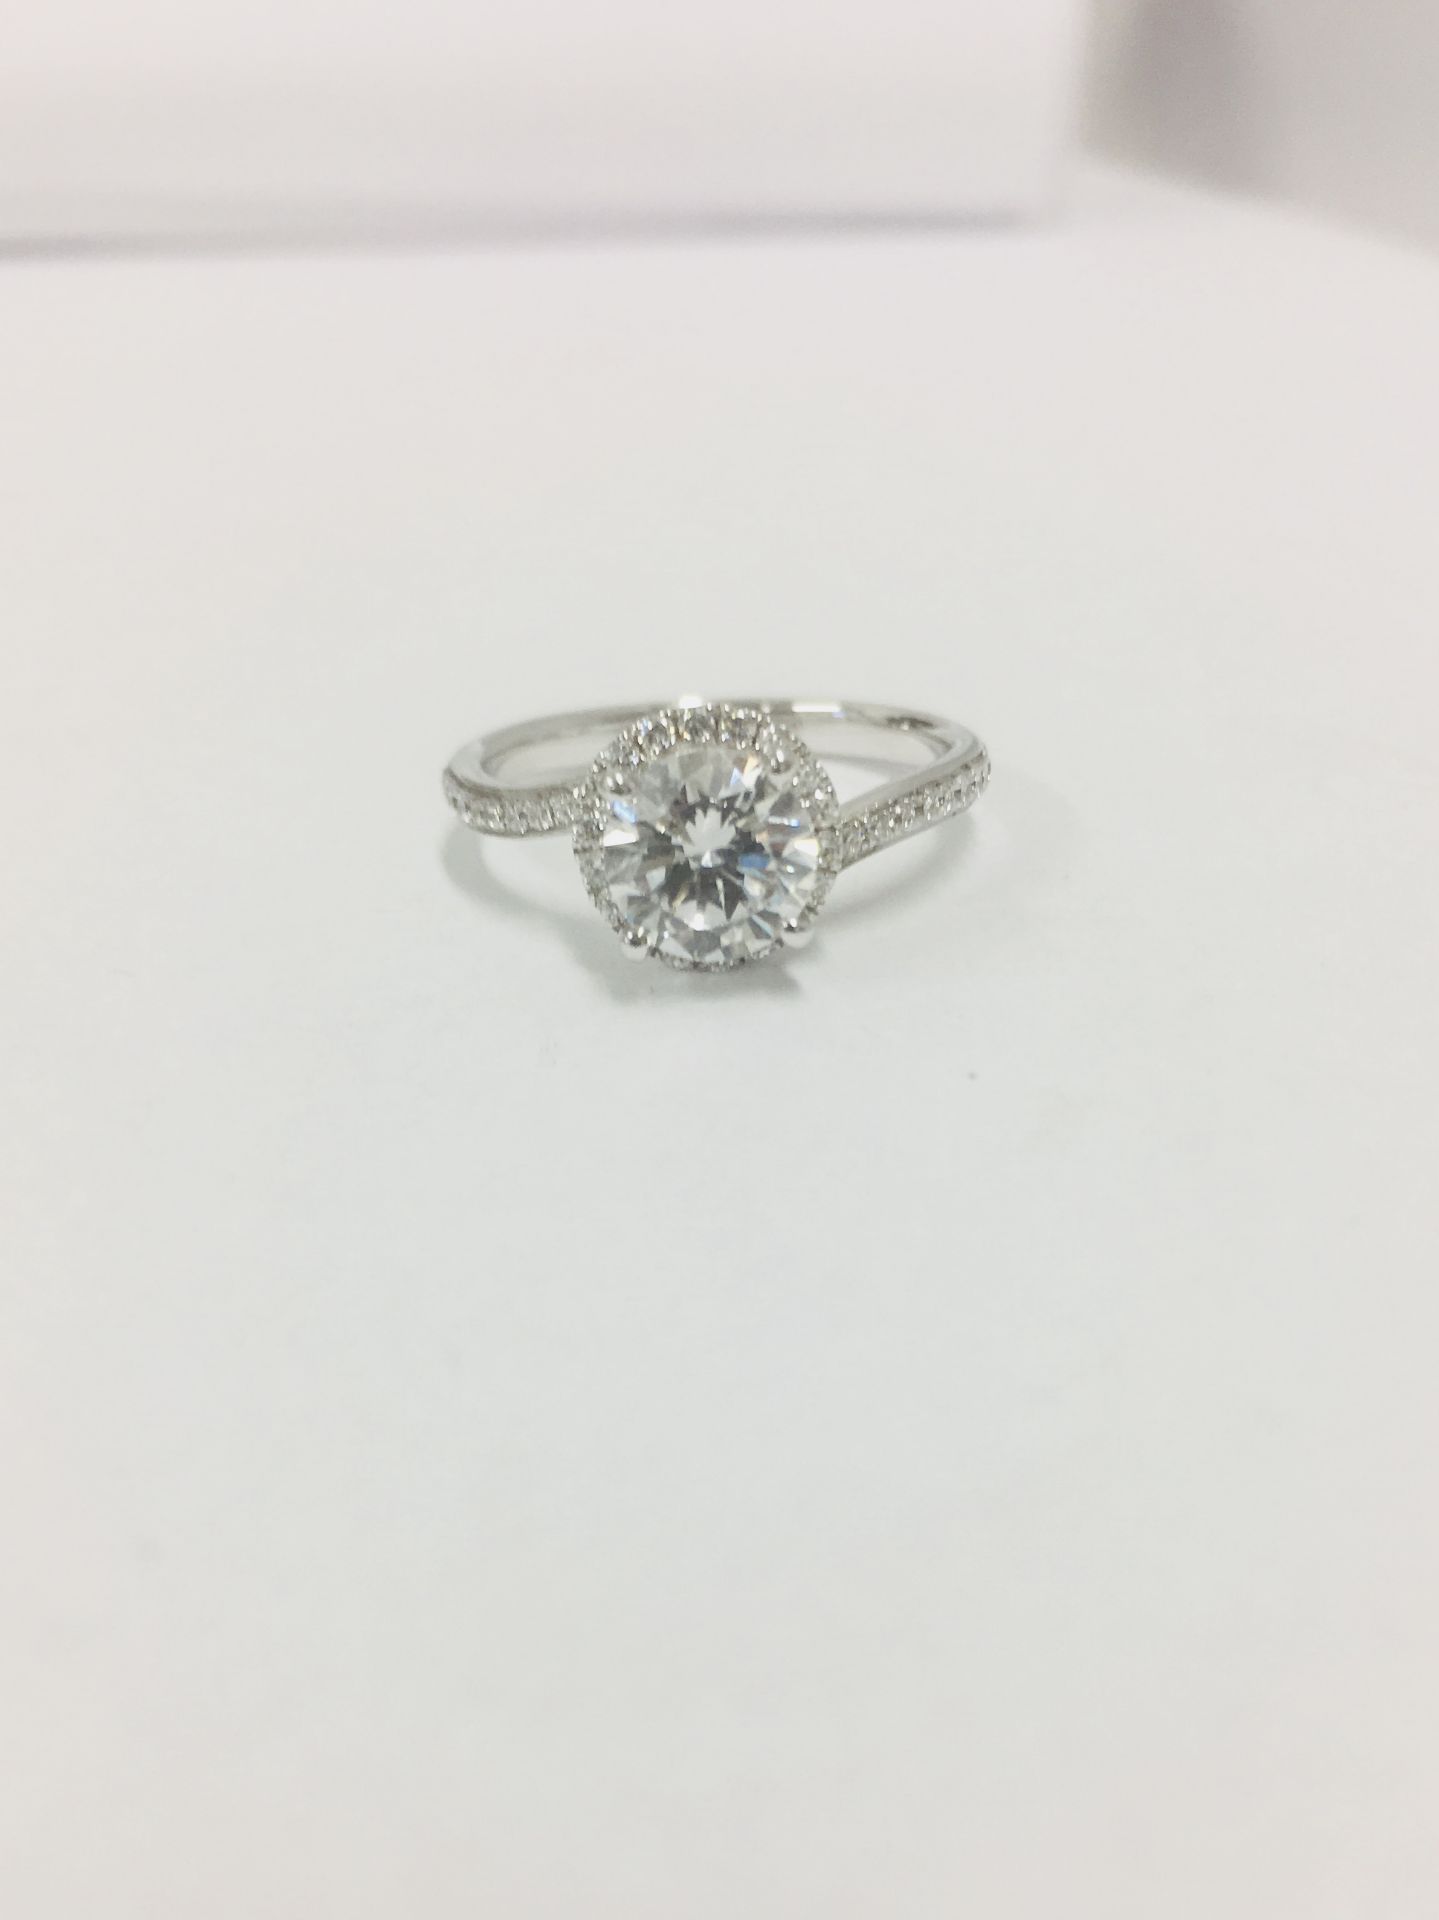 Platinum diamond solitaire ring,0.50ct brilliant cut diamond h colour vs clarity, - Image 6 of 6